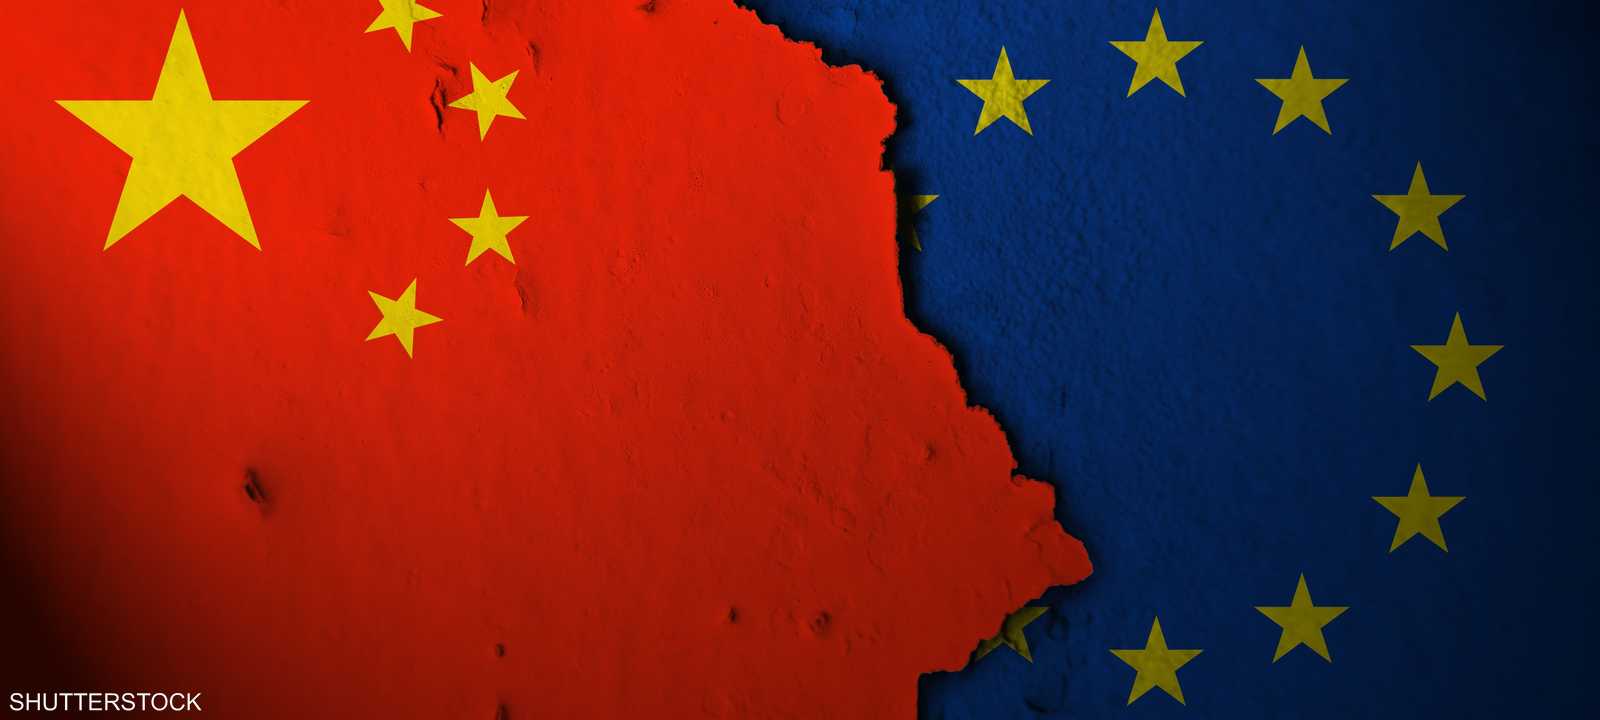 منافسة تجارية بين الصين والاتحاد الأوروبي